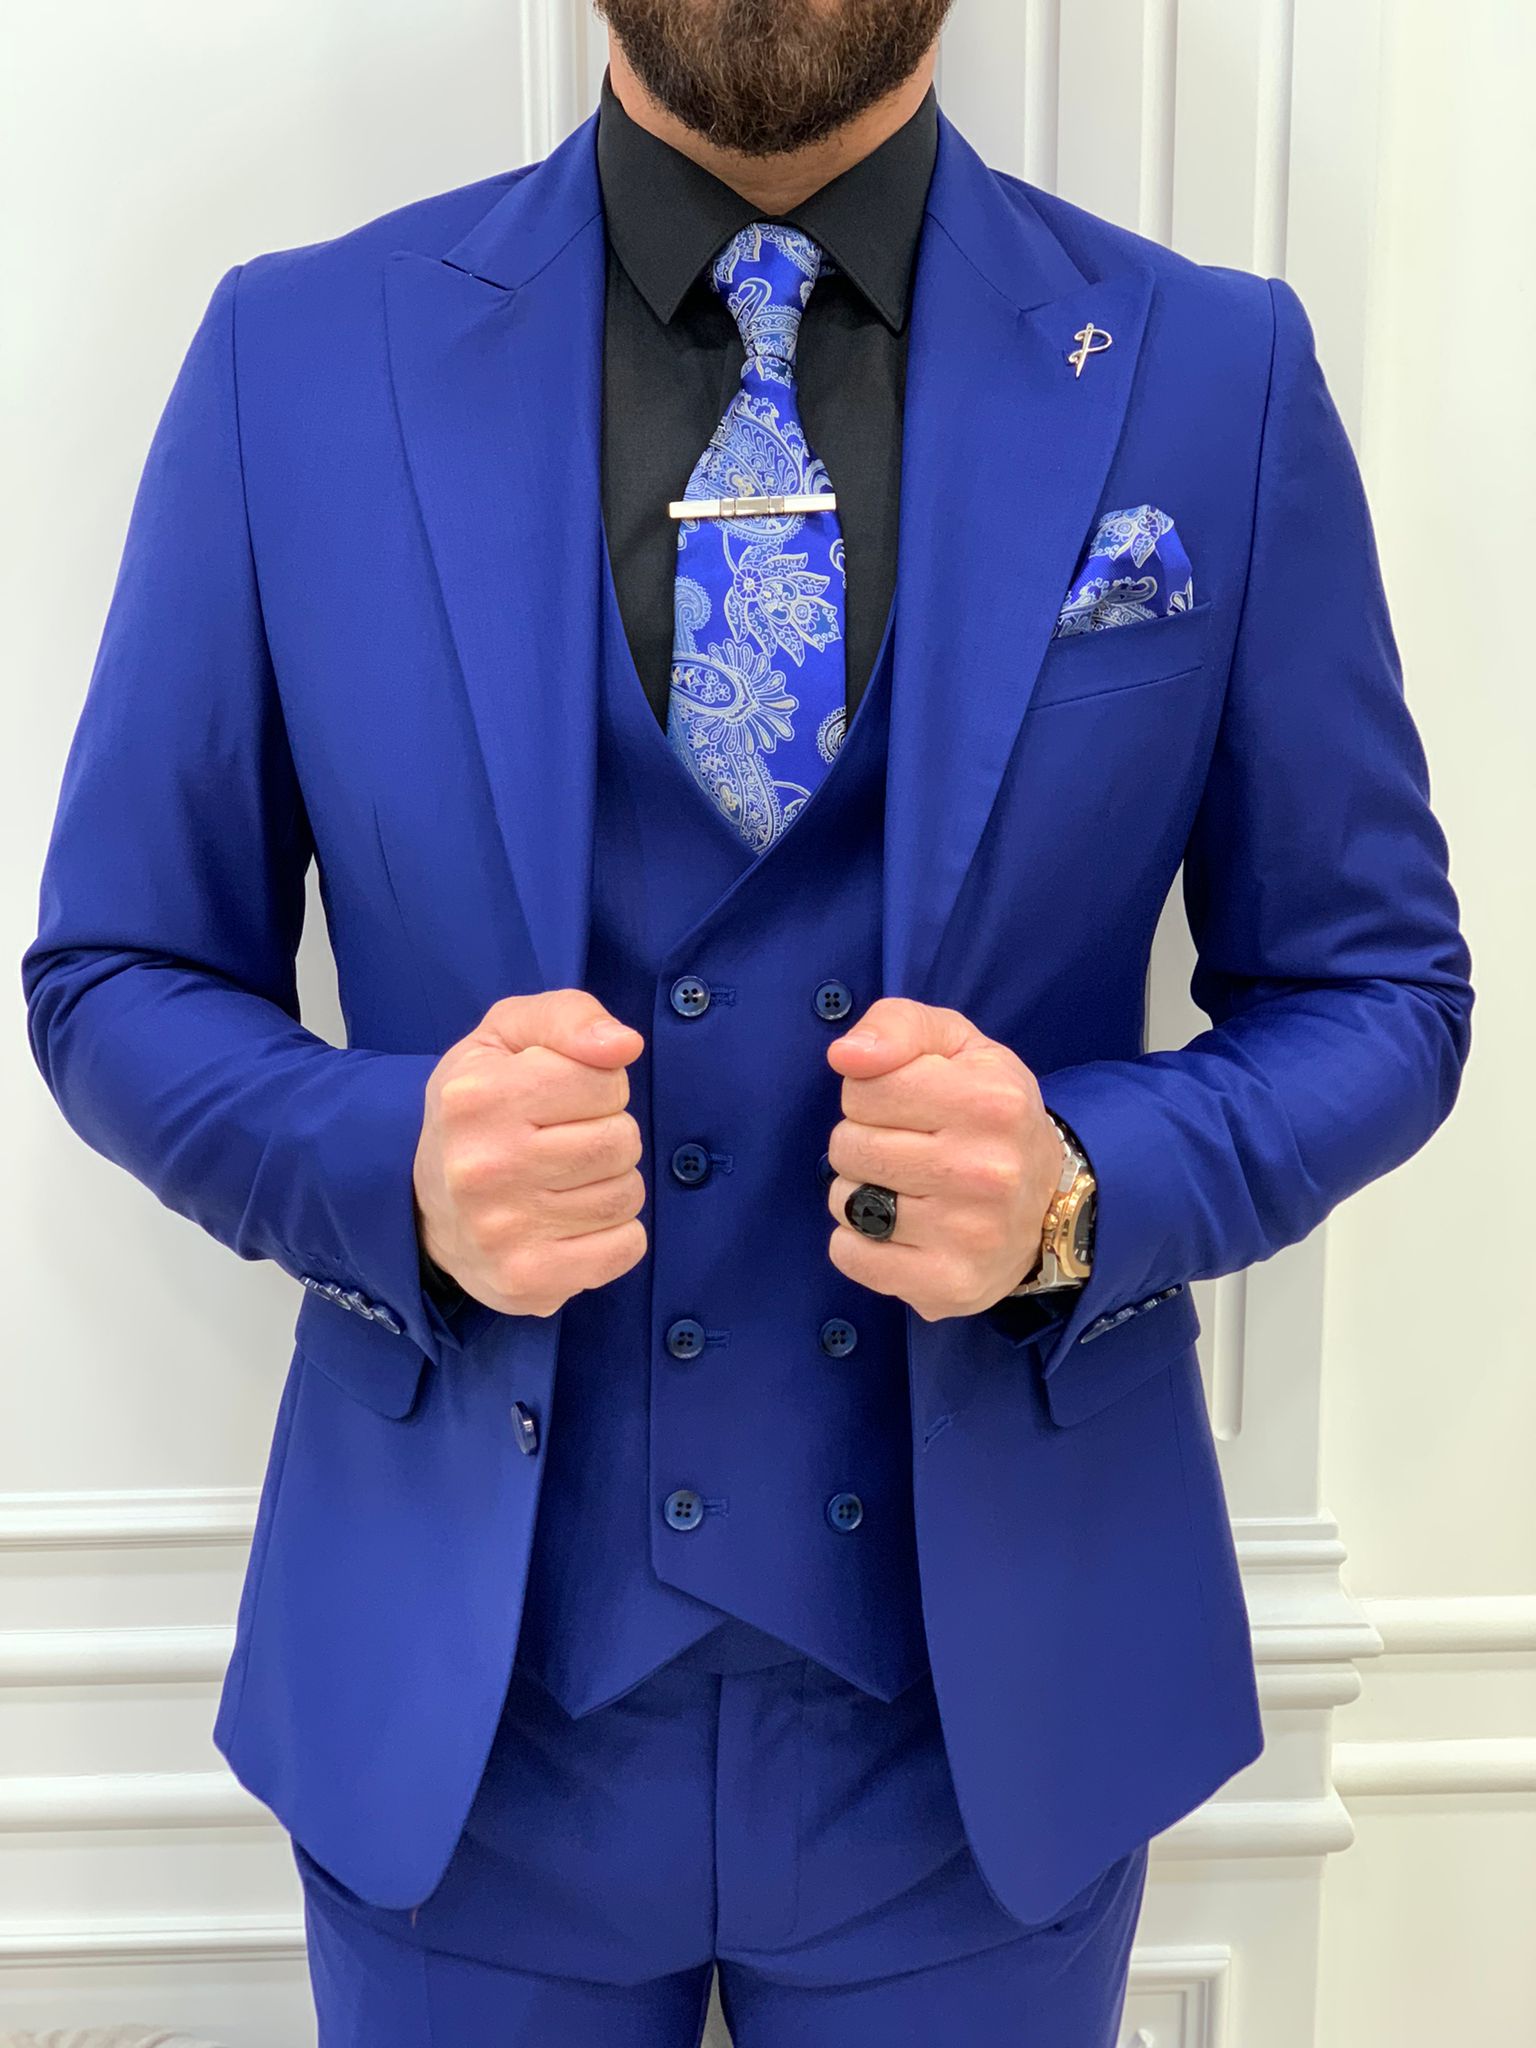 LoveeToo Men's Suit 3 Pieces Royal Royal Blue Slim Fit Tuxedo